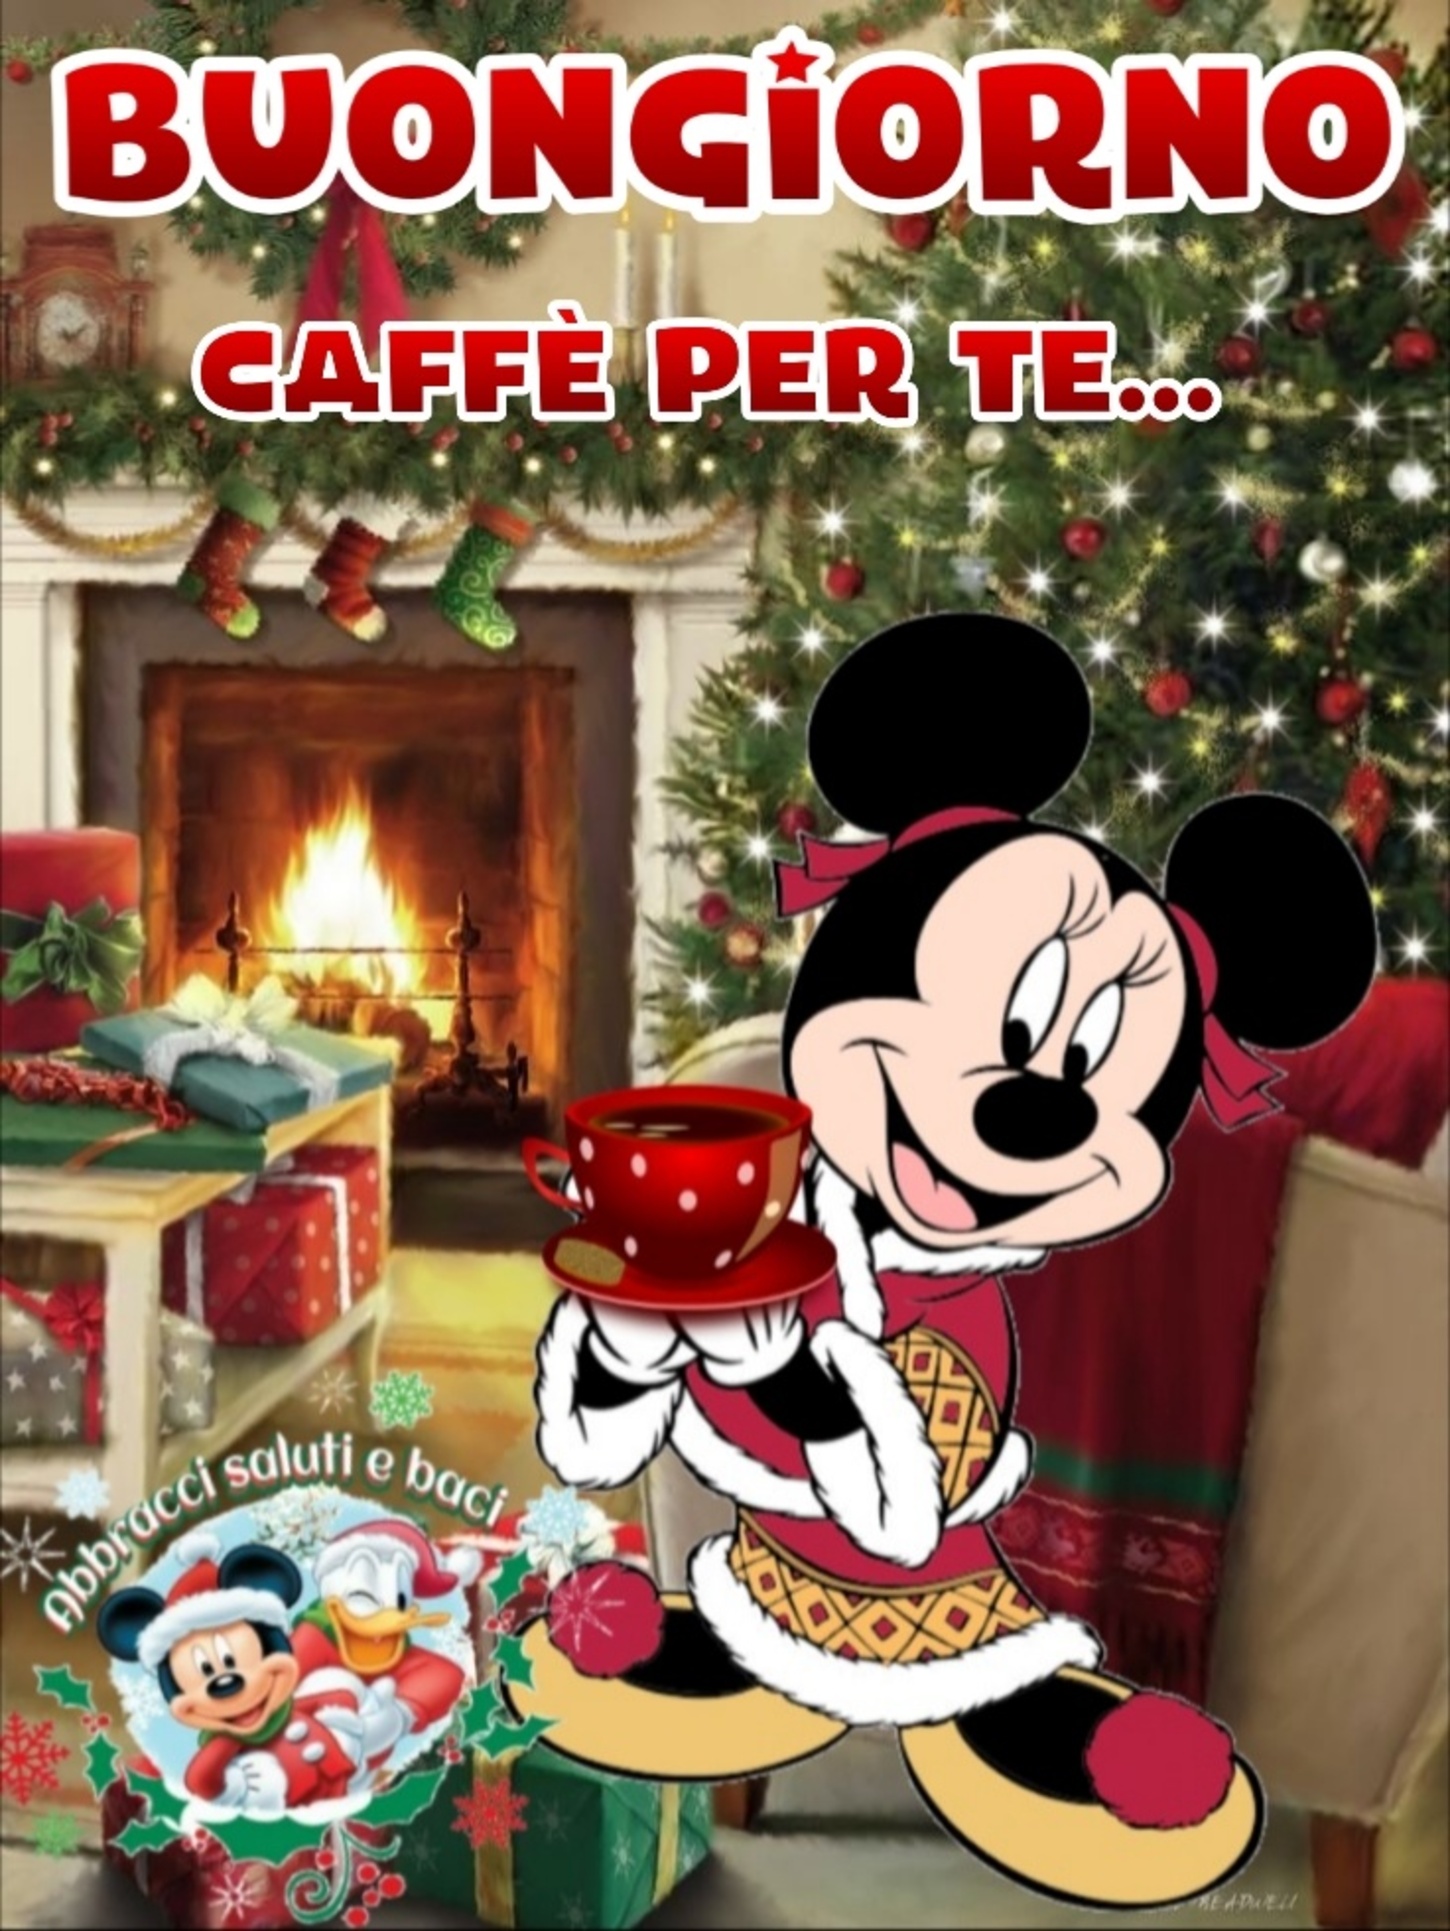 Buongiorno caffè con Minnie e il Natale